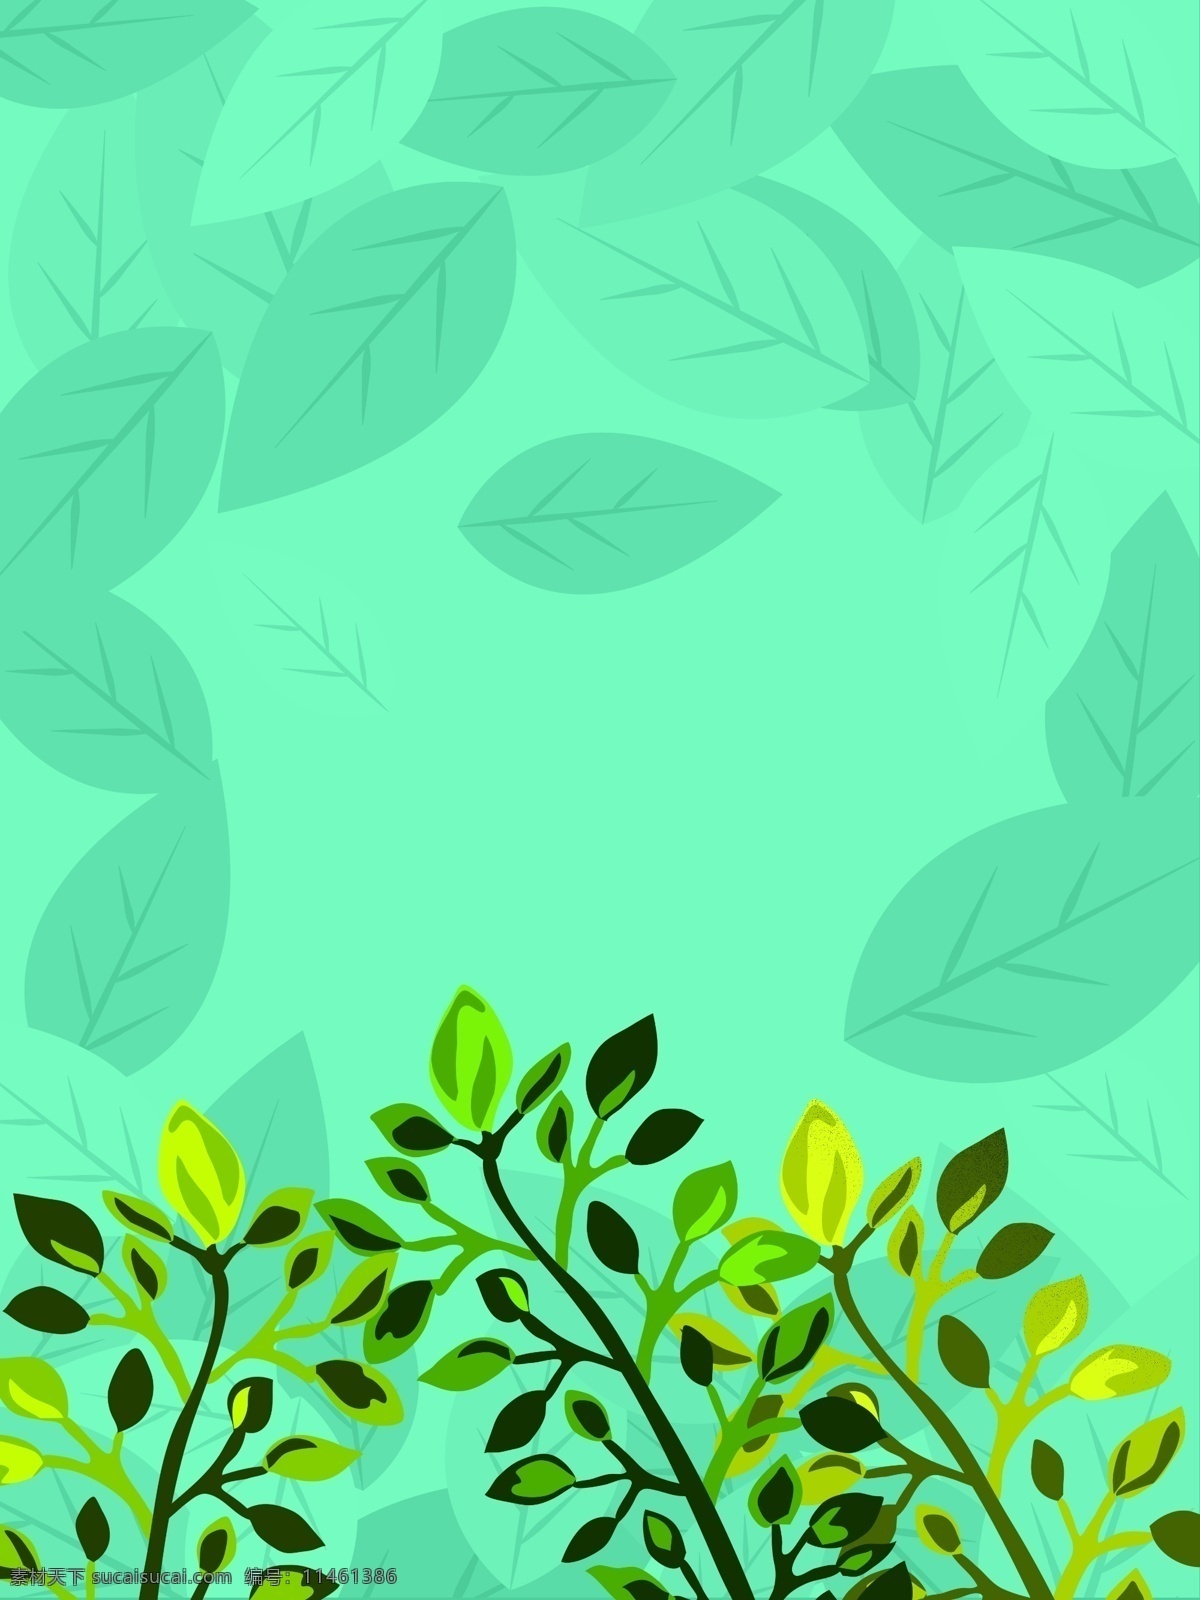 世界环境日 绿色植物 手绘 背景 小清新 手绘背景 水彩背景